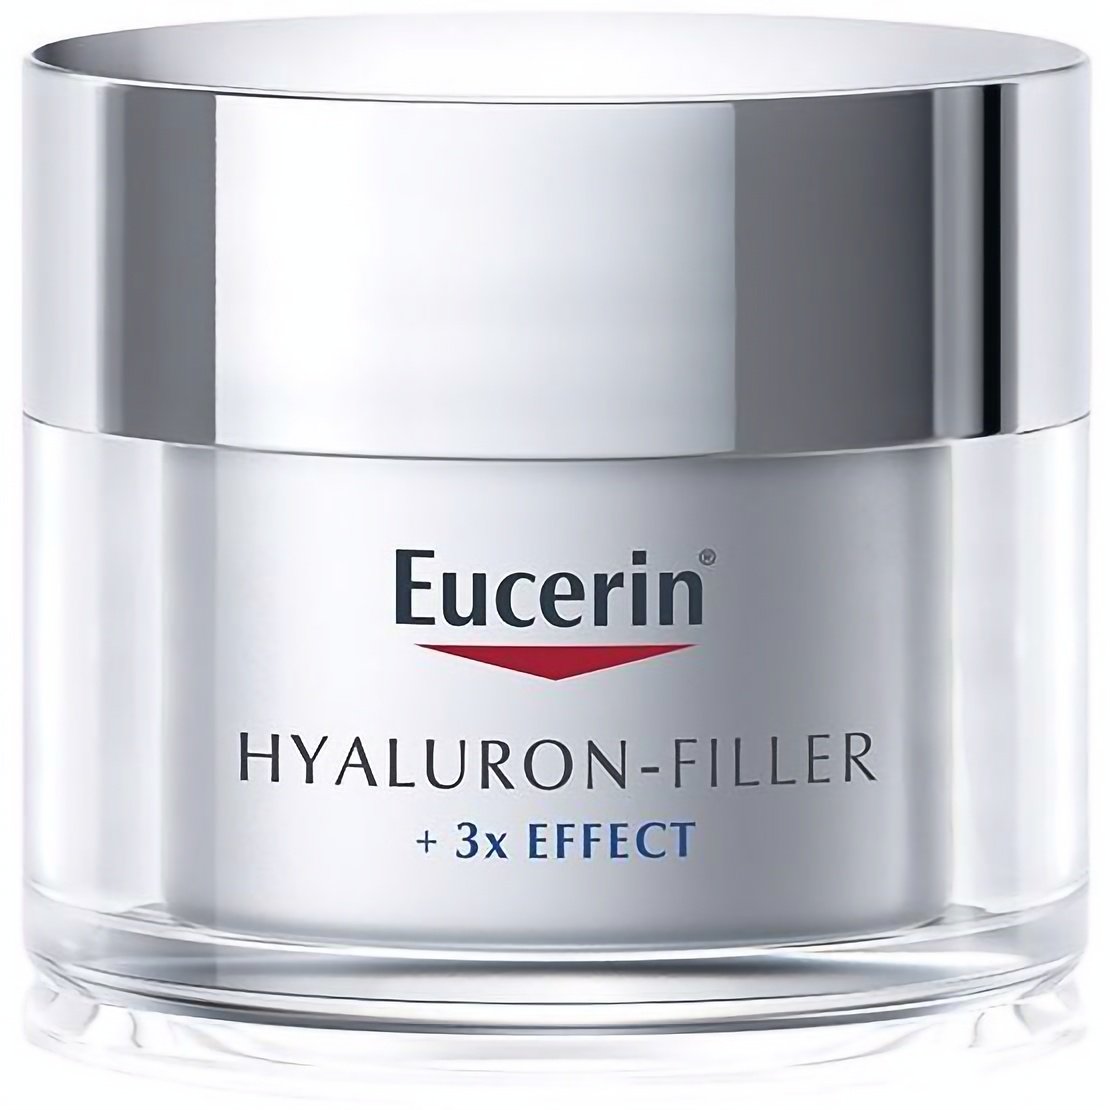 Дневной крем против морщин Eucerin Hyaluron Filler SPF30, для всех типов кожи, 50 мл - фото 1